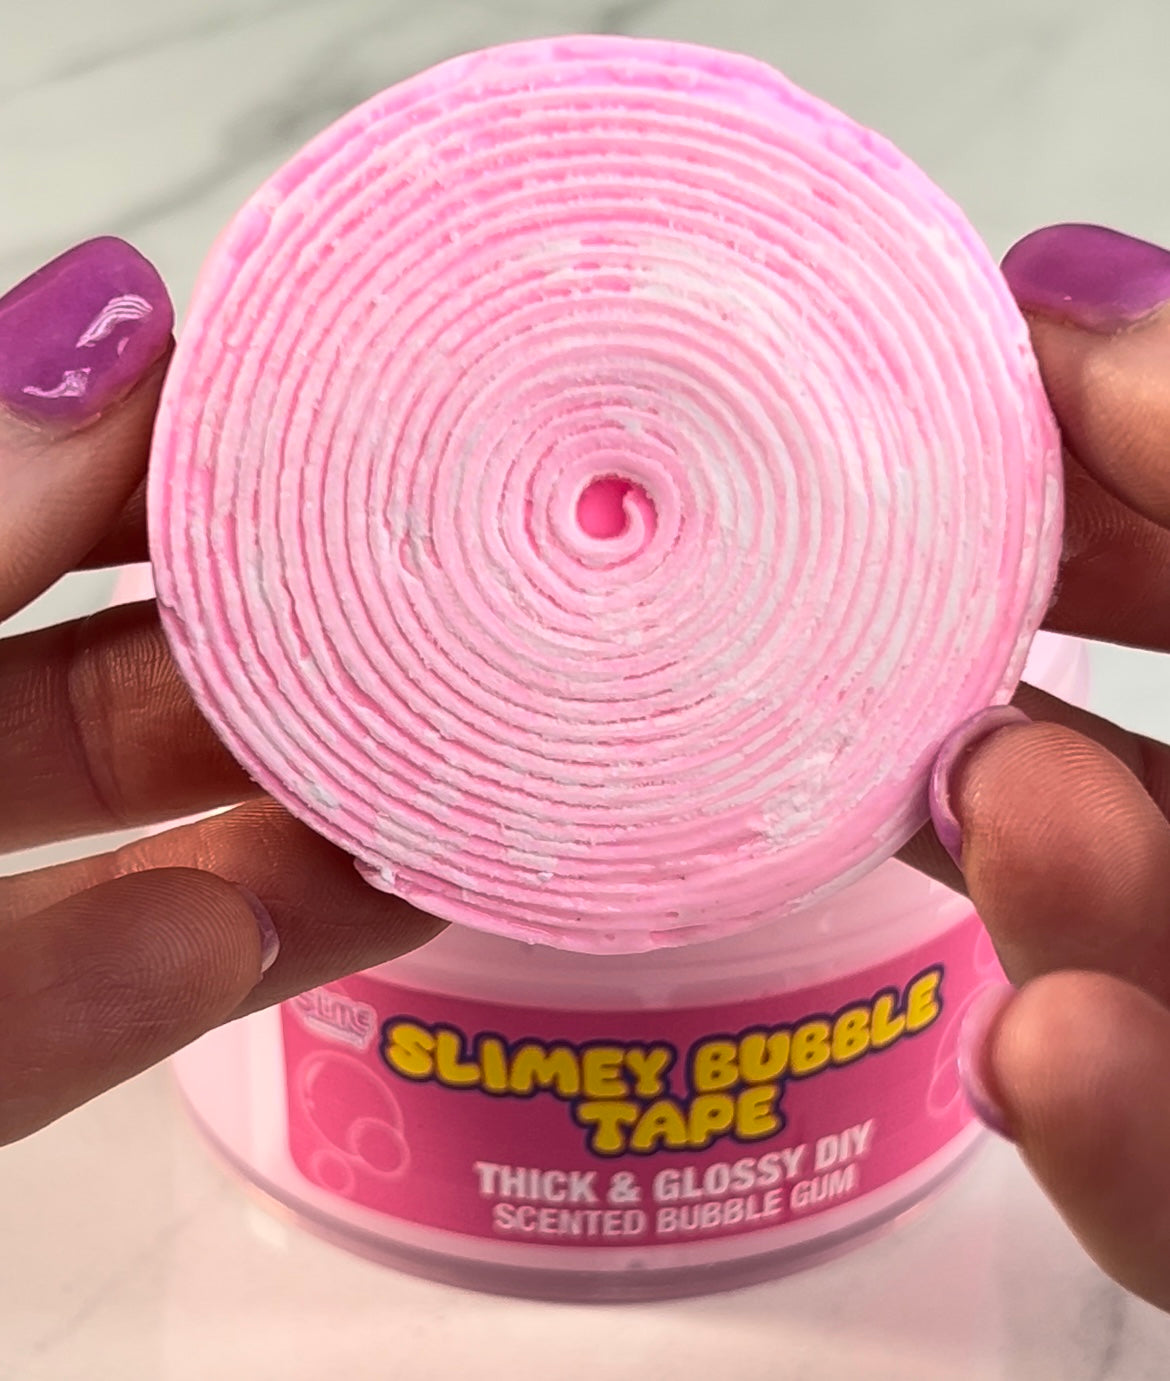 Slimey Bubble Gum Tape